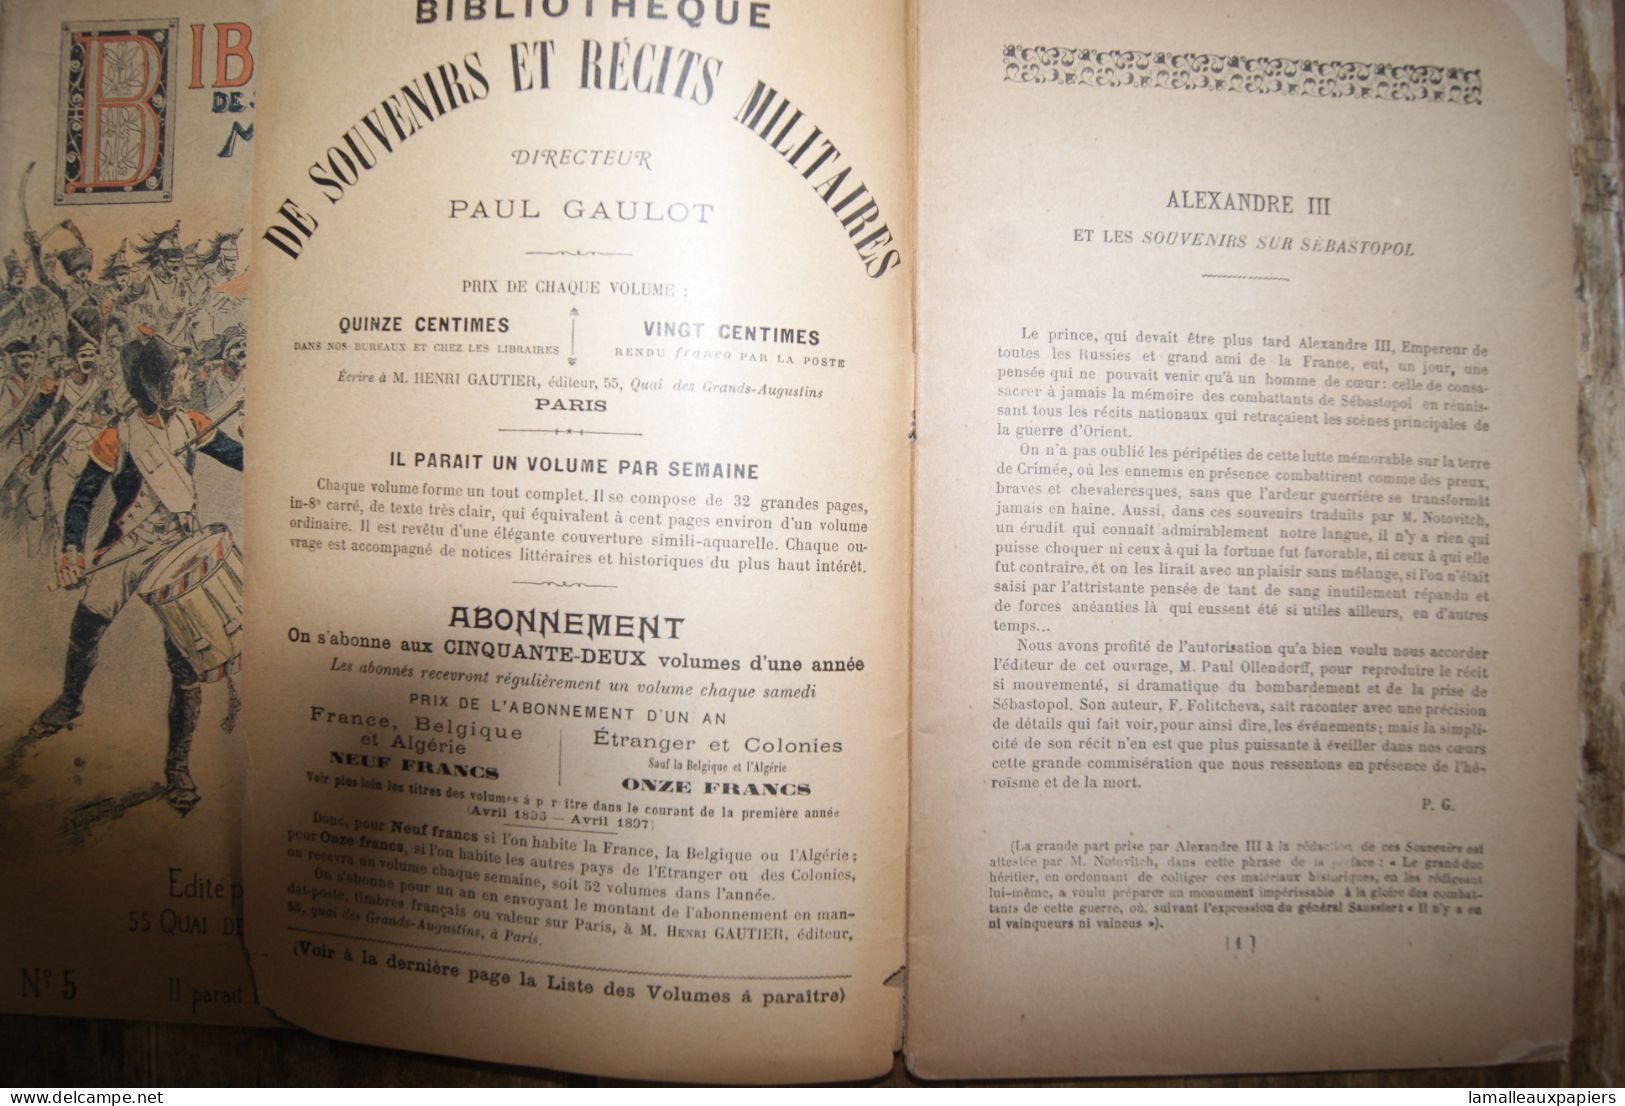 Lot De 14 Numéros De La Bibliothèque Des Souvenirs Et Récits Militaires (1896-97) - French